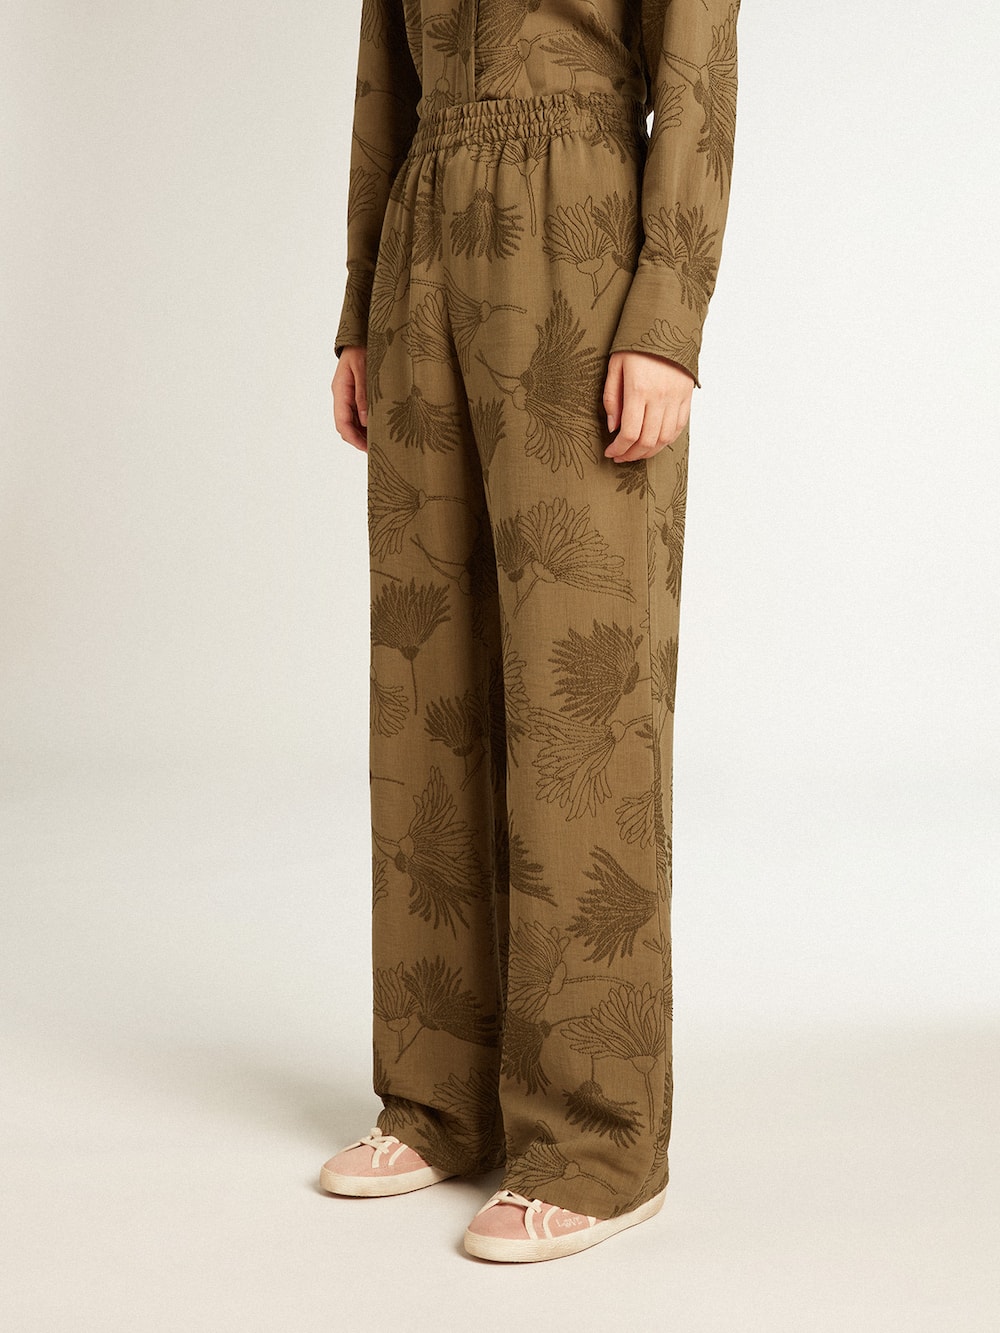 Golden Goose - Pantalone da donna in viscosa misto cotone color oliva con motivo floreale in 